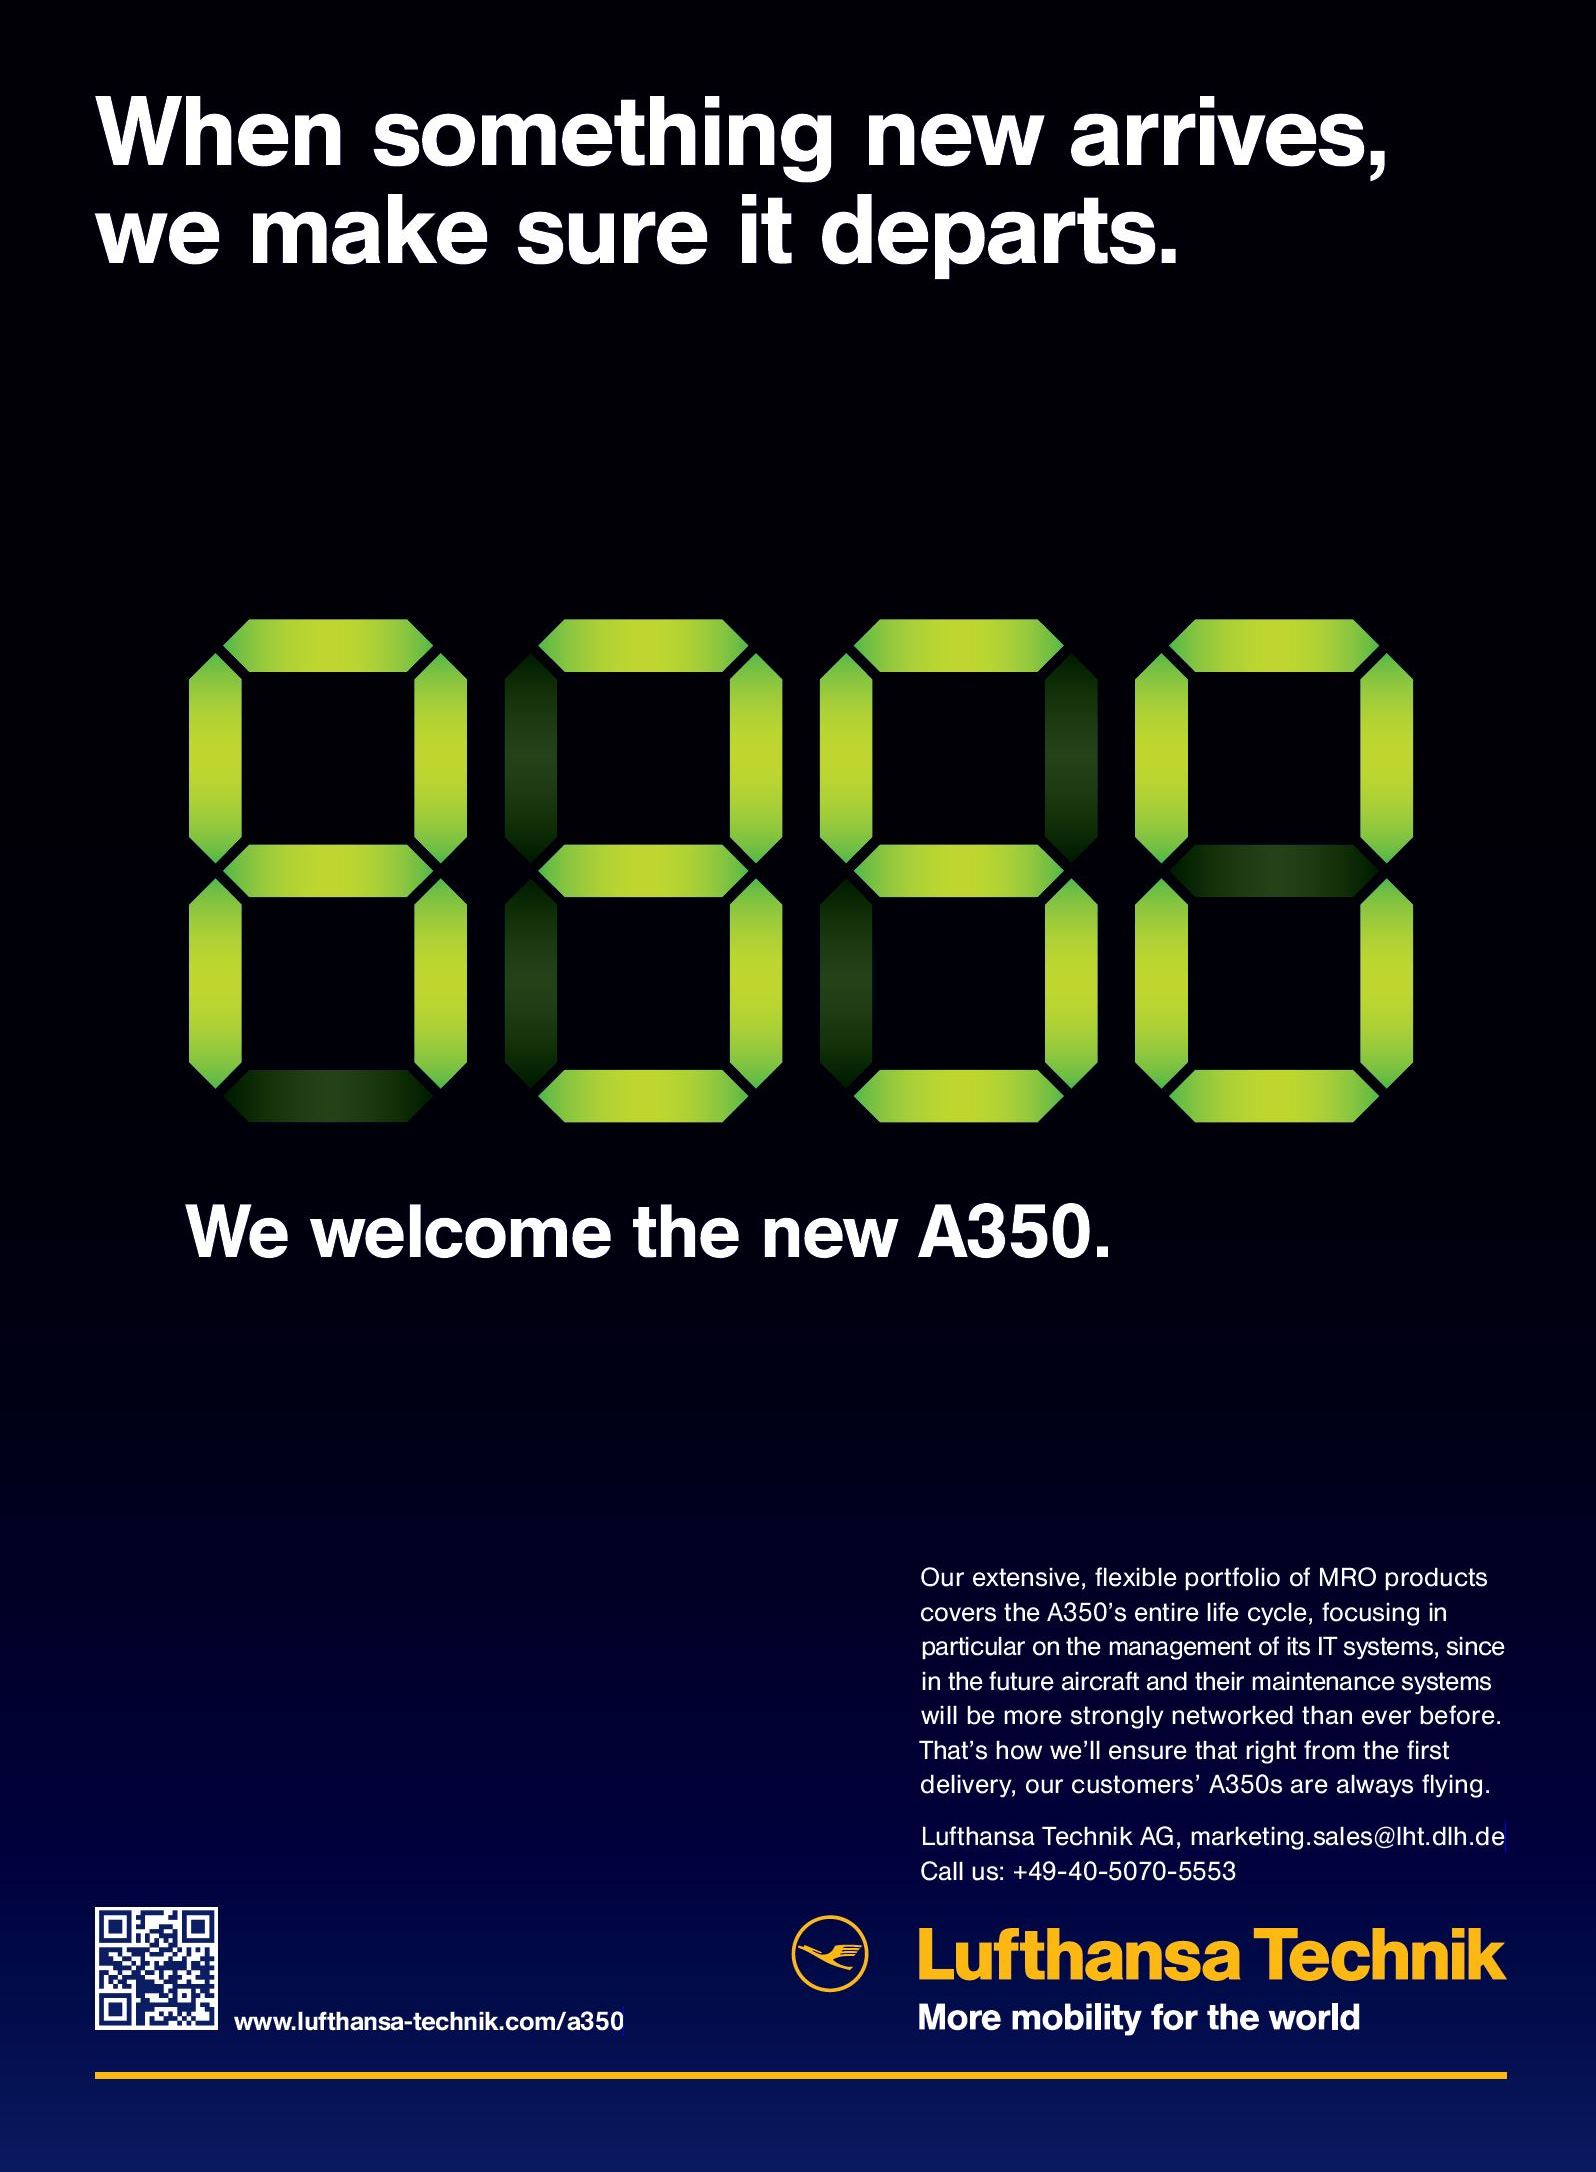 Lufthansa Technik – Airbus A350 Ad